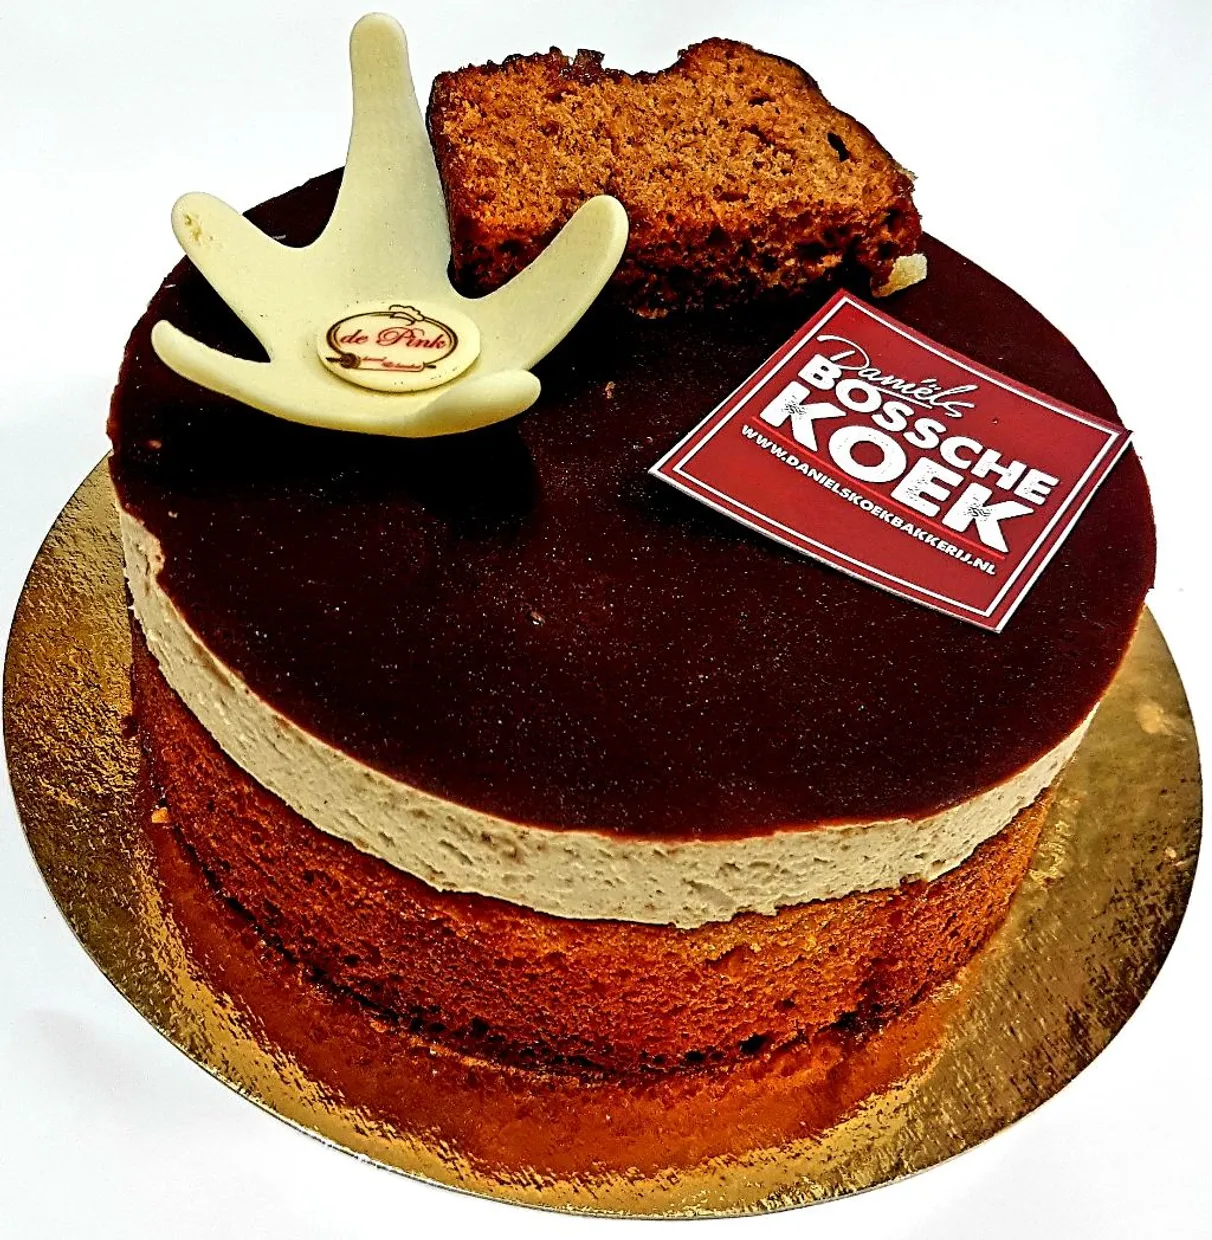 Bossche koek taartje